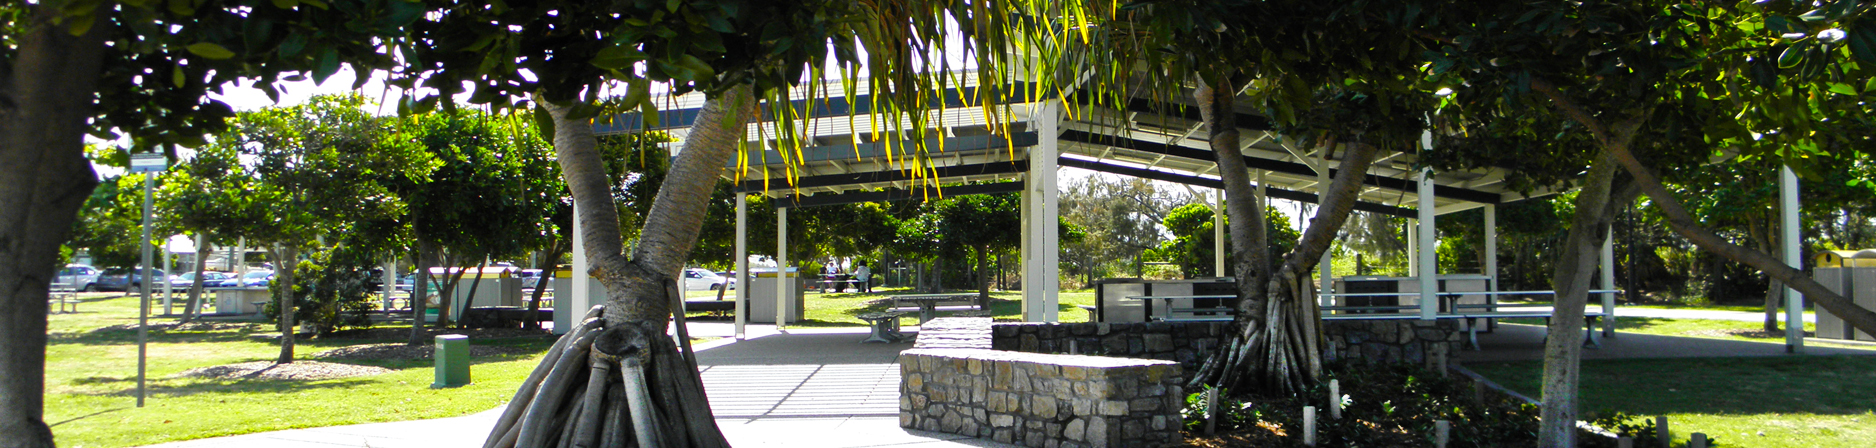 Mooloolaba Rotary Park